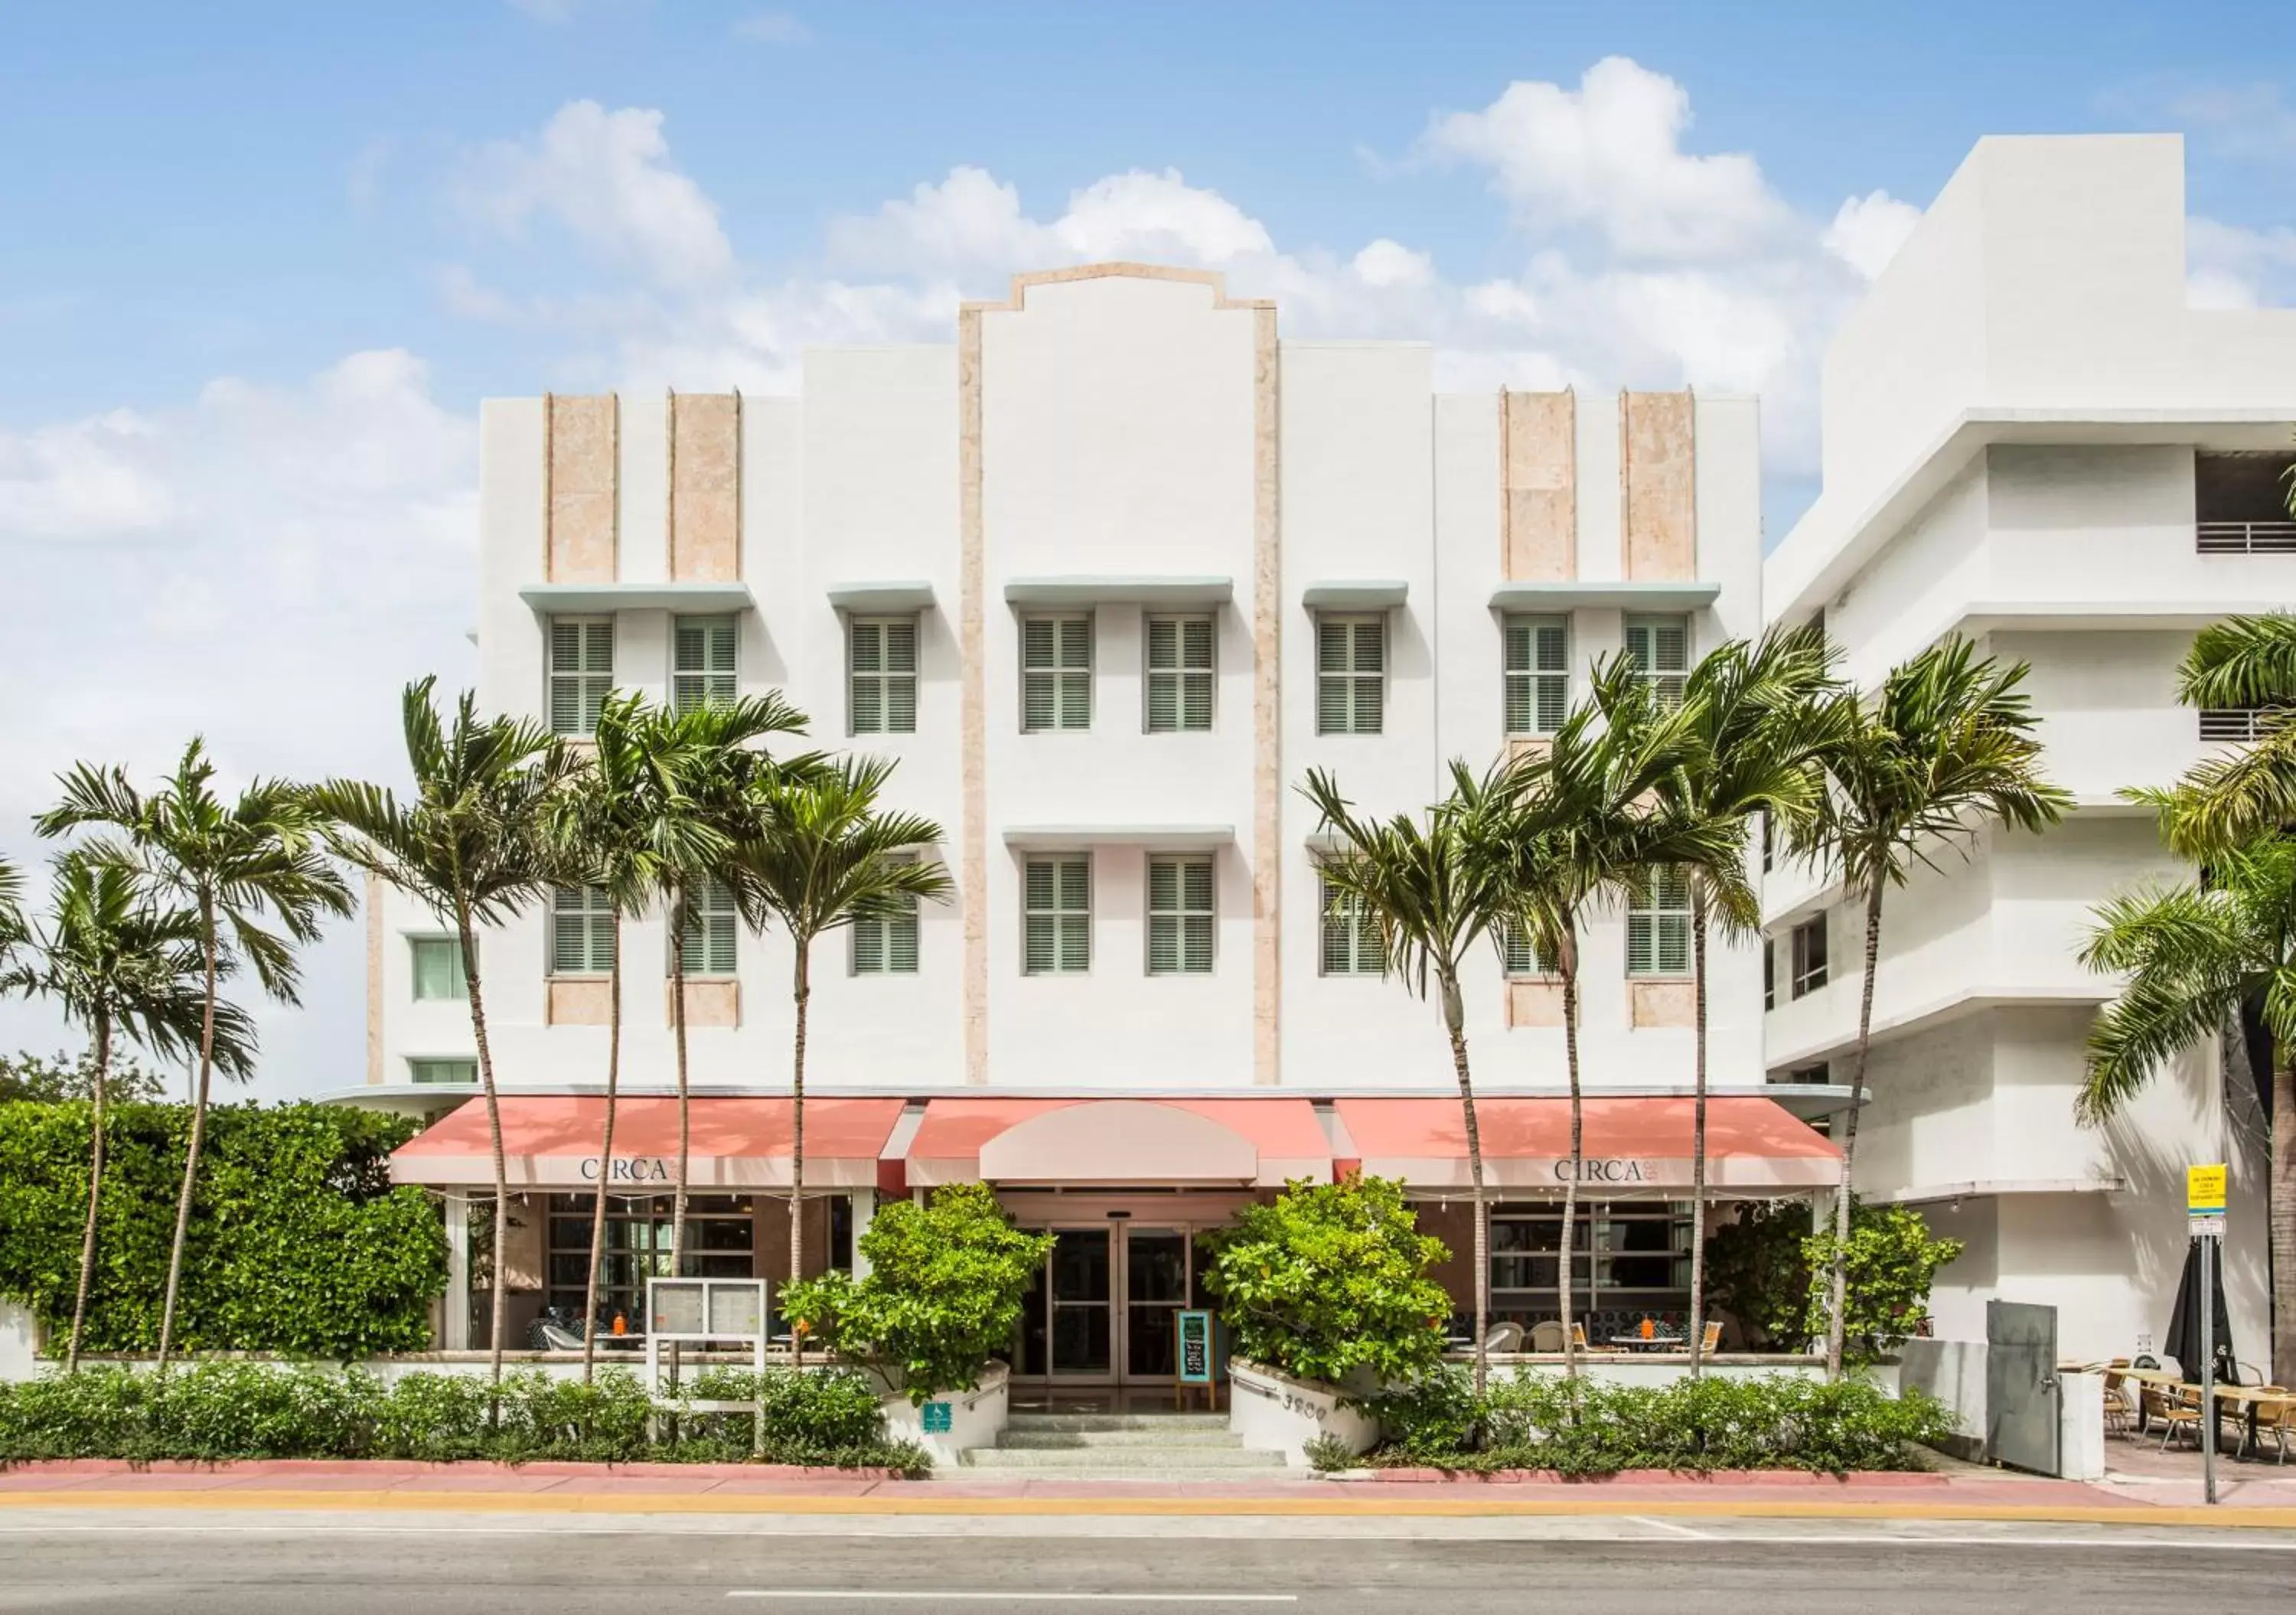 Facade/entrance, Garden in Circa 39 Hotel Miami Beach